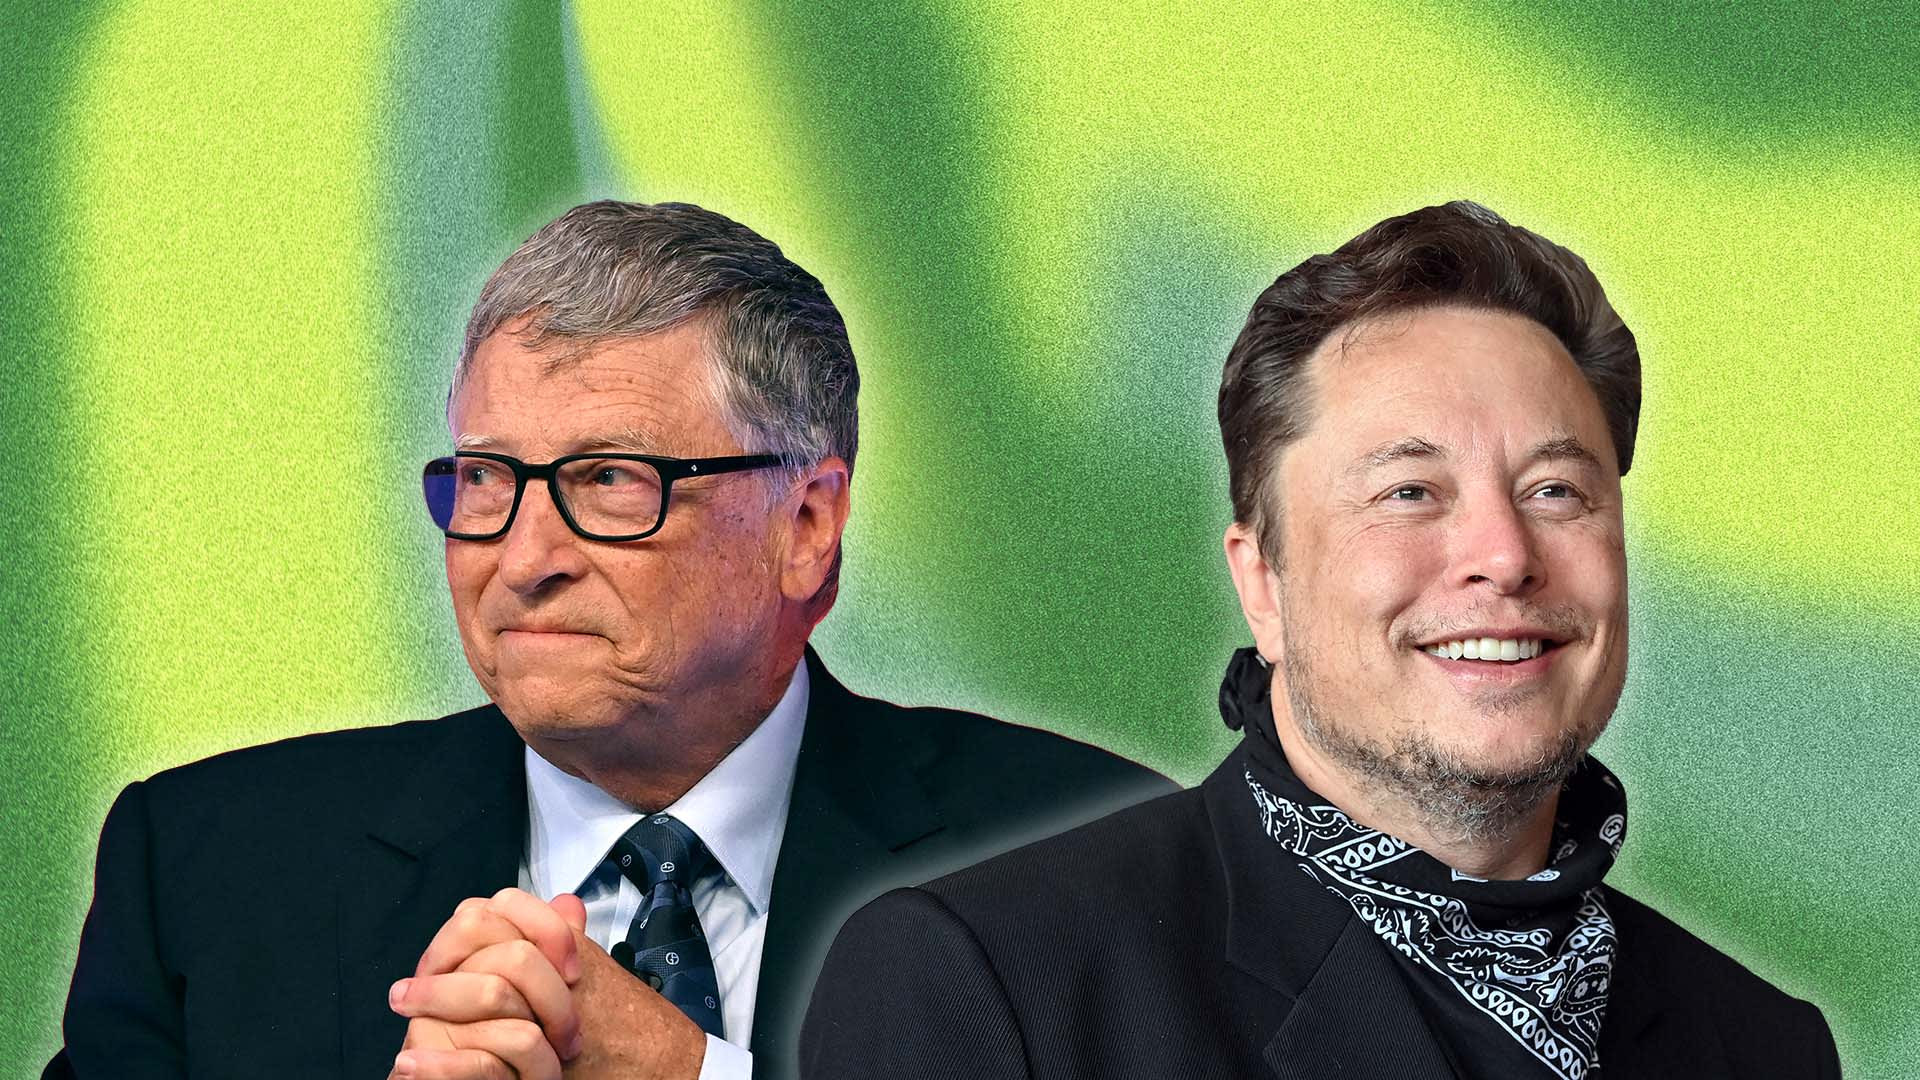 Khai phá cách tối ưu sức mạnh thời gian mà tỷ phú Elon Musk và Bill Gates đều áp dụng